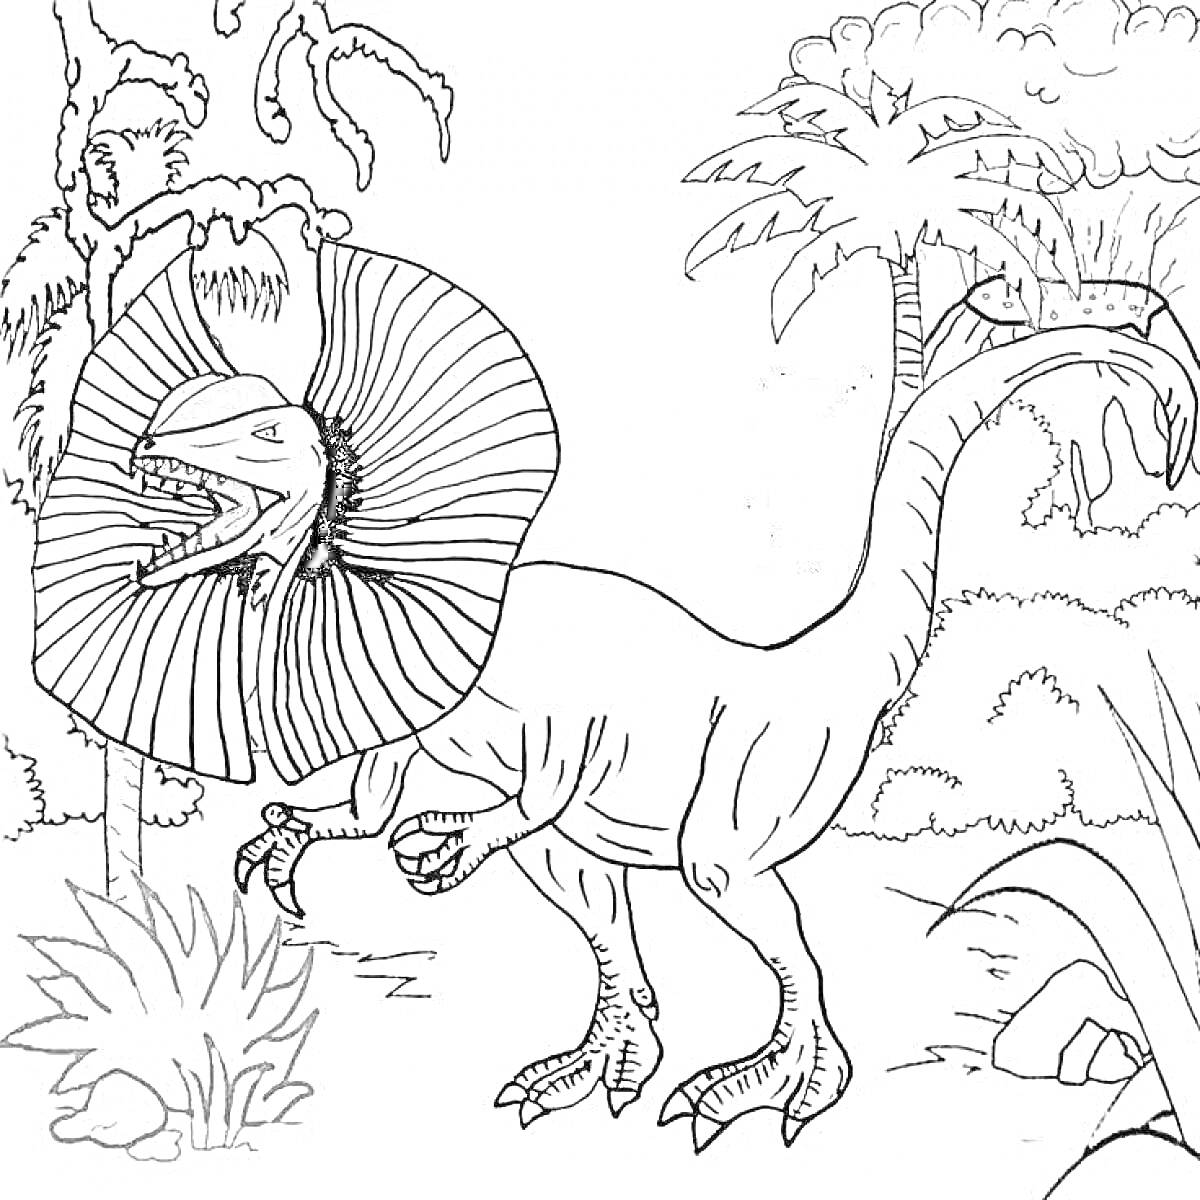 Раскраска Дилофозавр с раскрытым воротником на фоне леса с деревьями и кустарниками